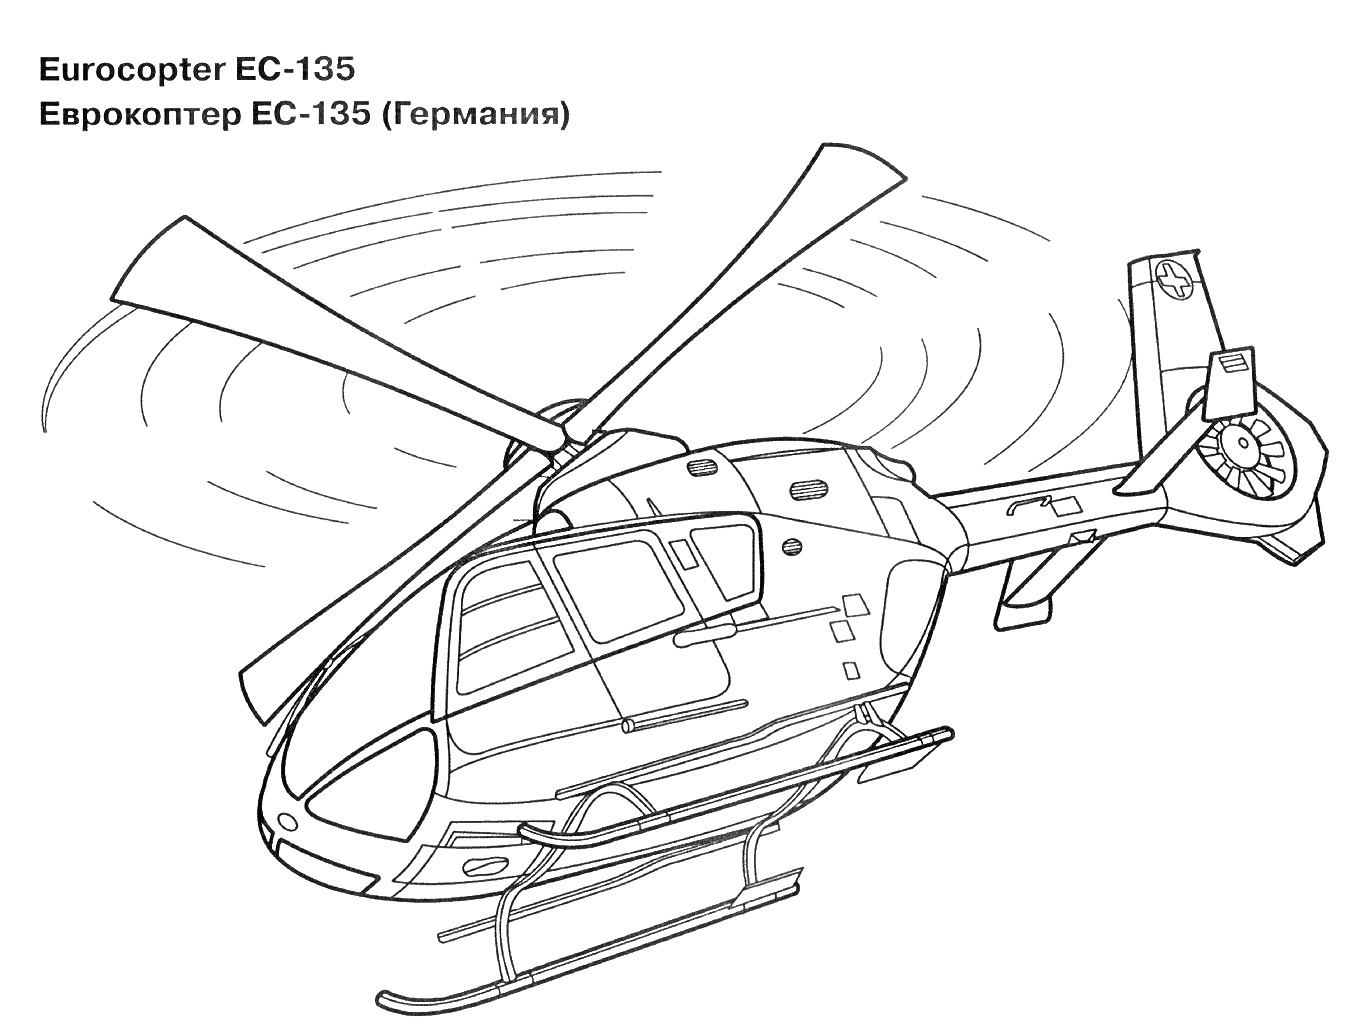 Еврокоптер EC-135, Германия, рисунок вертолета с вращающимися лопастями